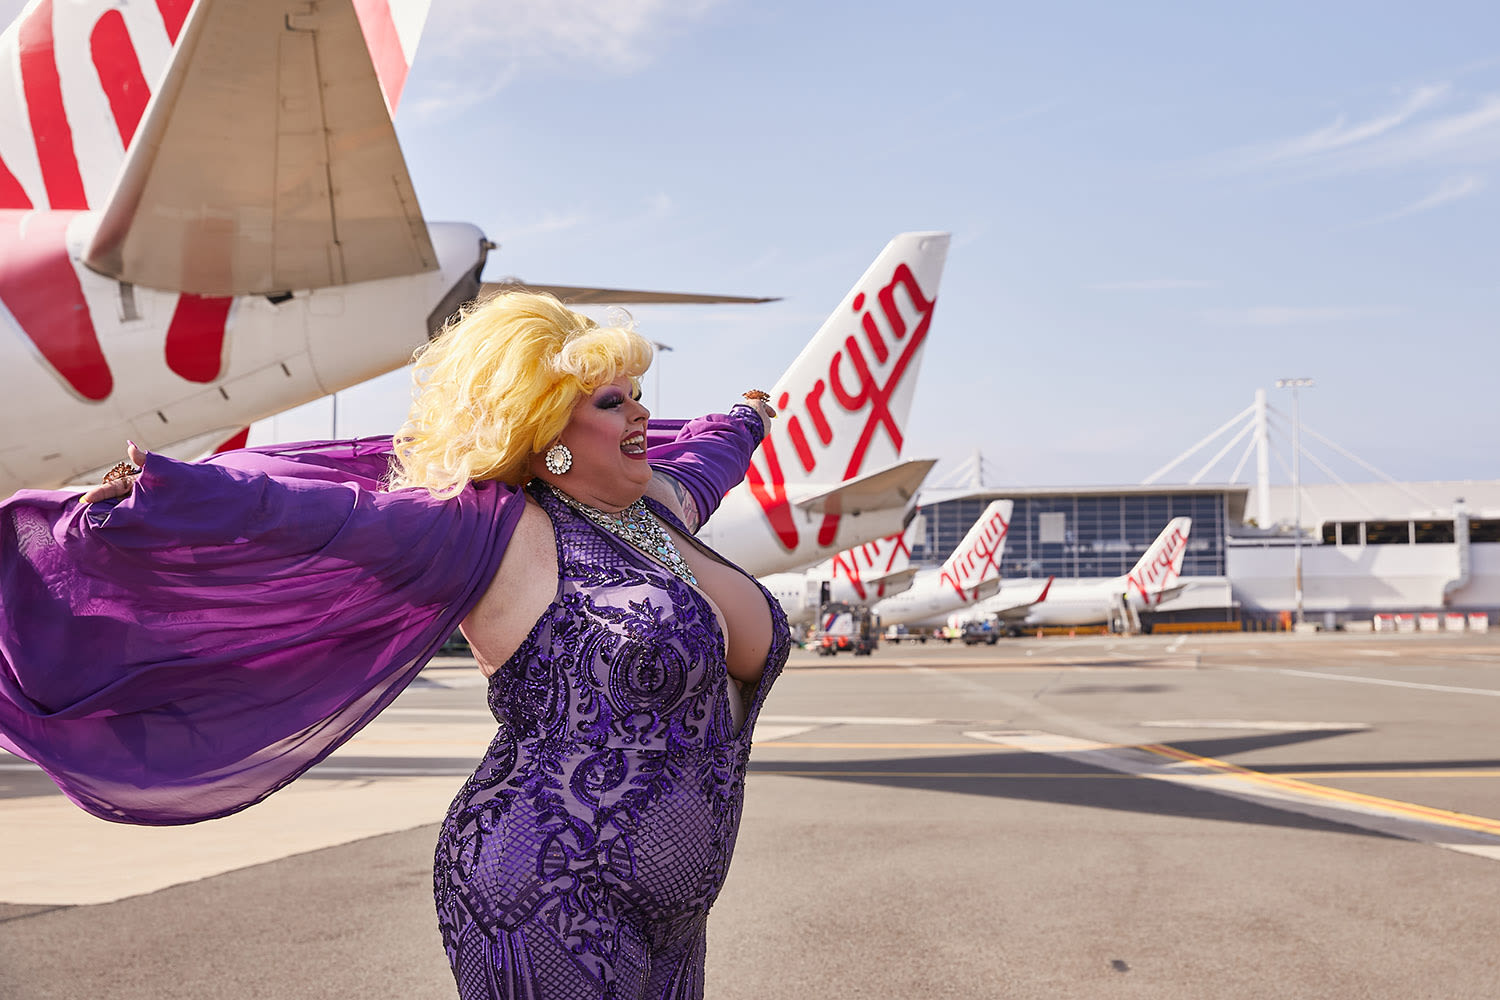 A drag queen posing next to Virgin Australia aircraft